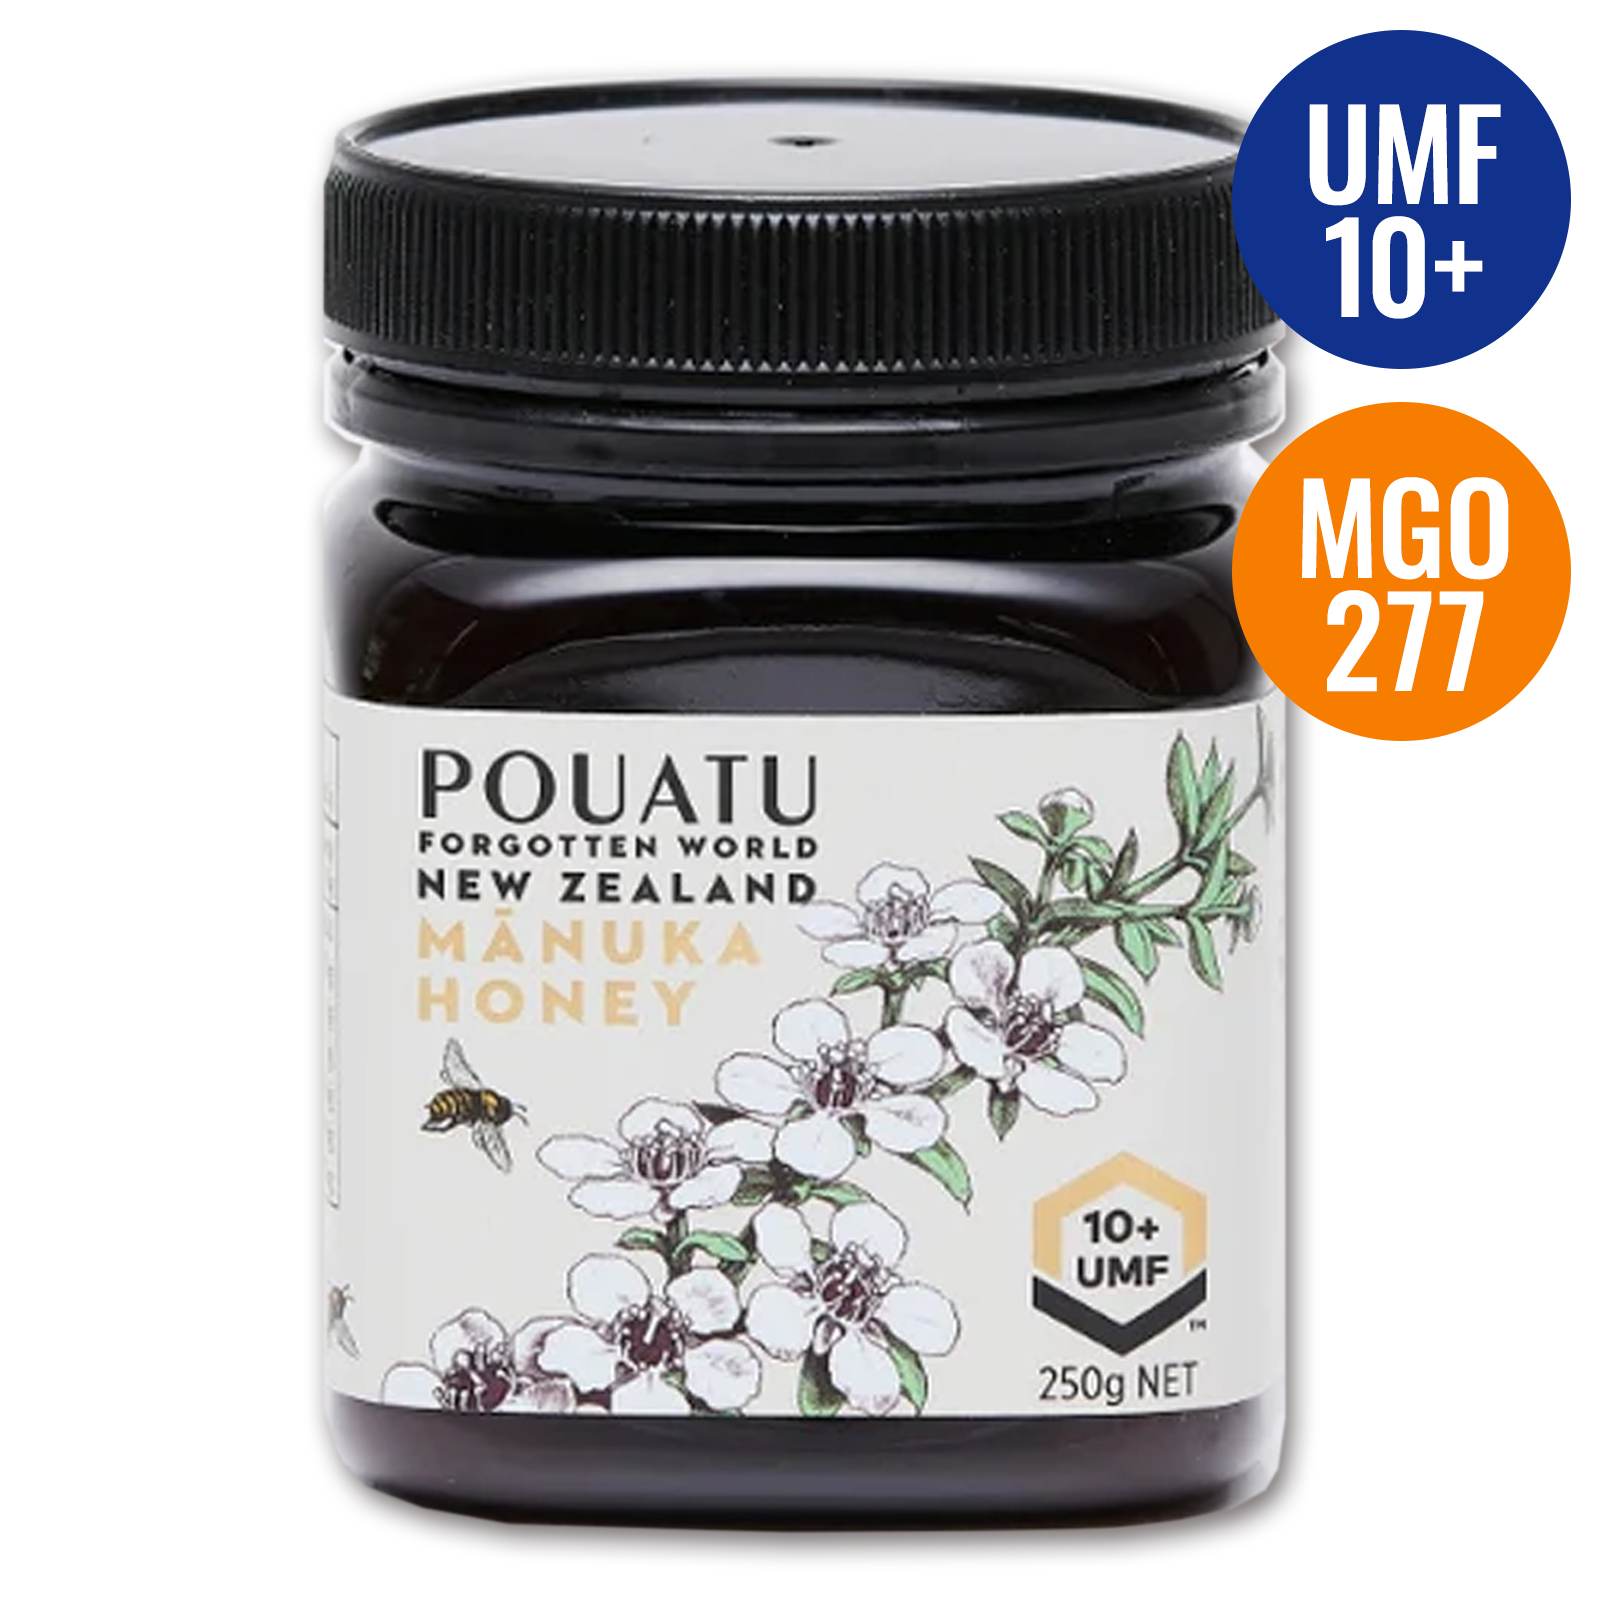 UMF認証 高品質 天然 蜂蜜 マヌカハニー UMF10+ MGO277 ニュージーランド産 (250g) ホライズンファームズ